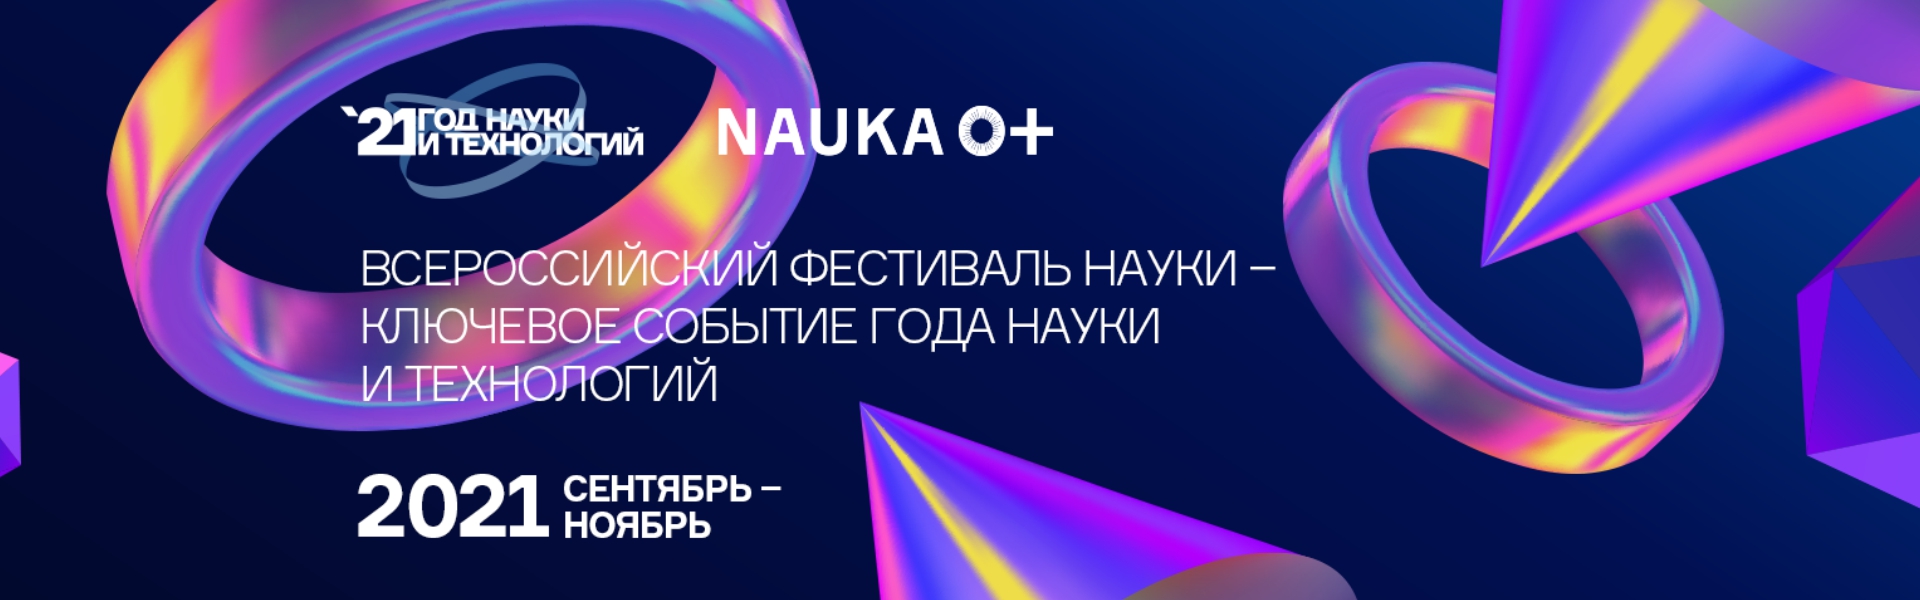 ФОТО к новости: Конкурсы XVI Всероссийского фестиваля науки NAUKA 0+